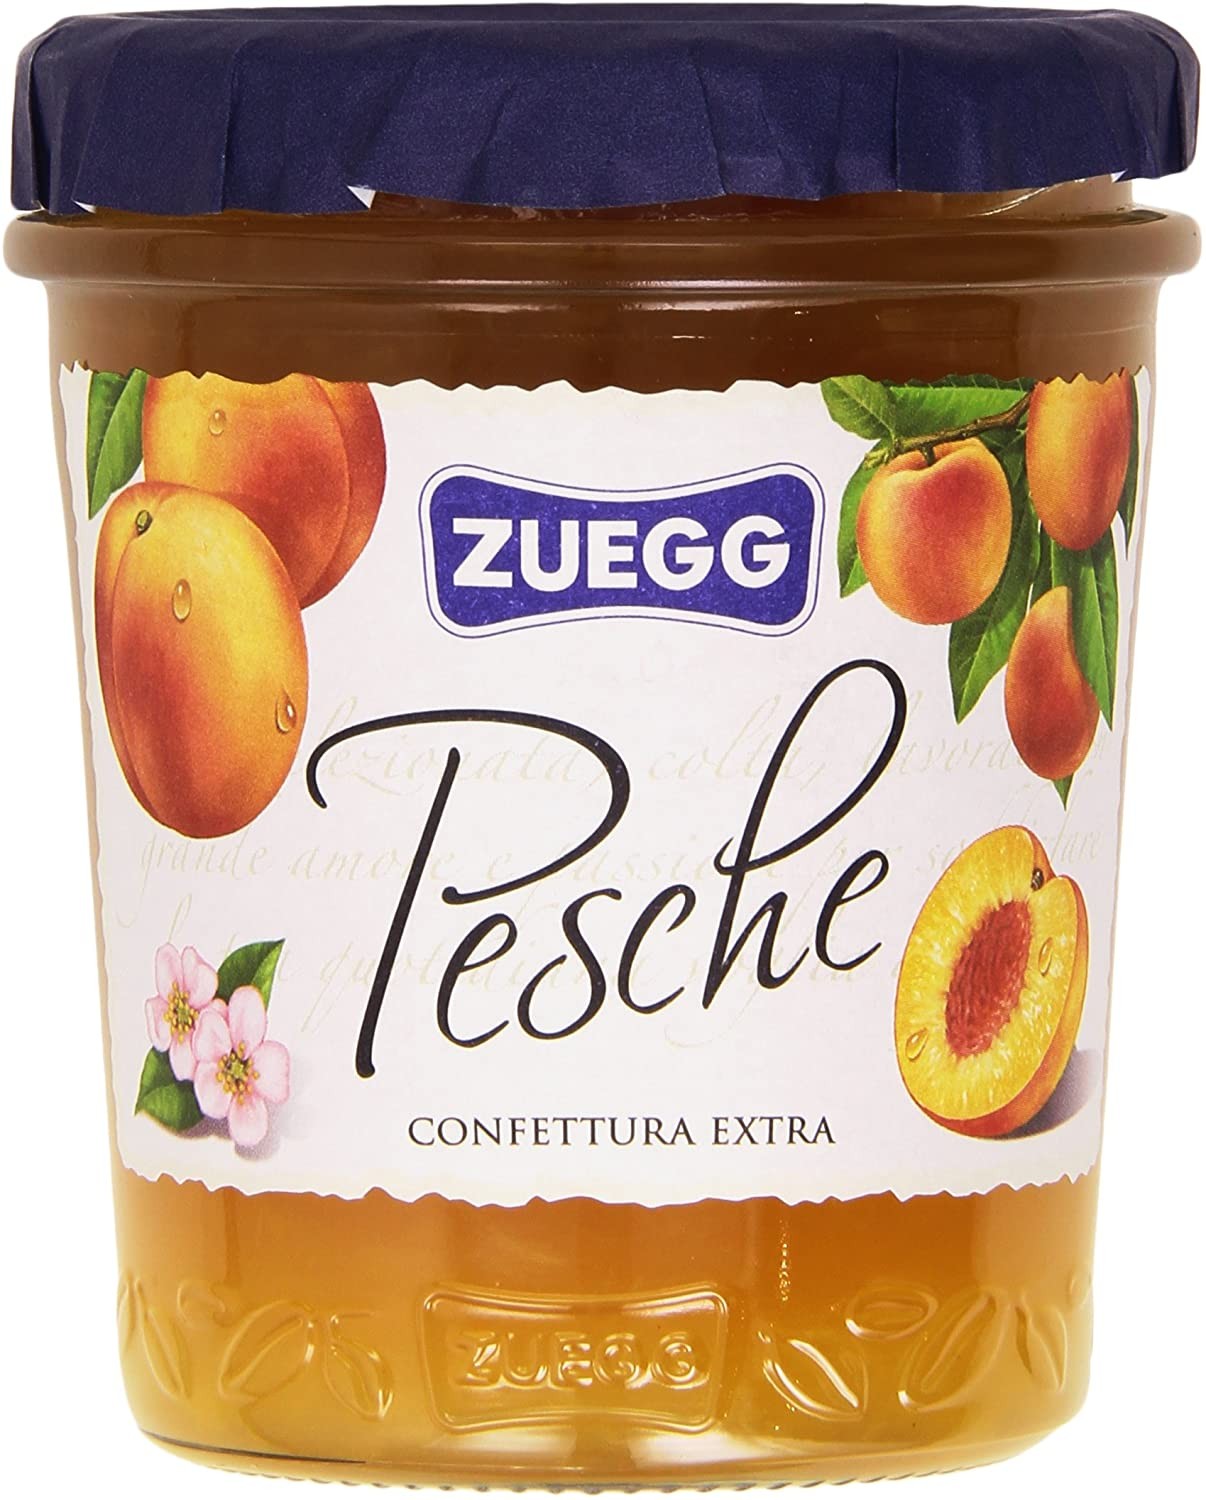 Zuegg - Pesche, Confettura Extra - 320 G - [confezione da 6]